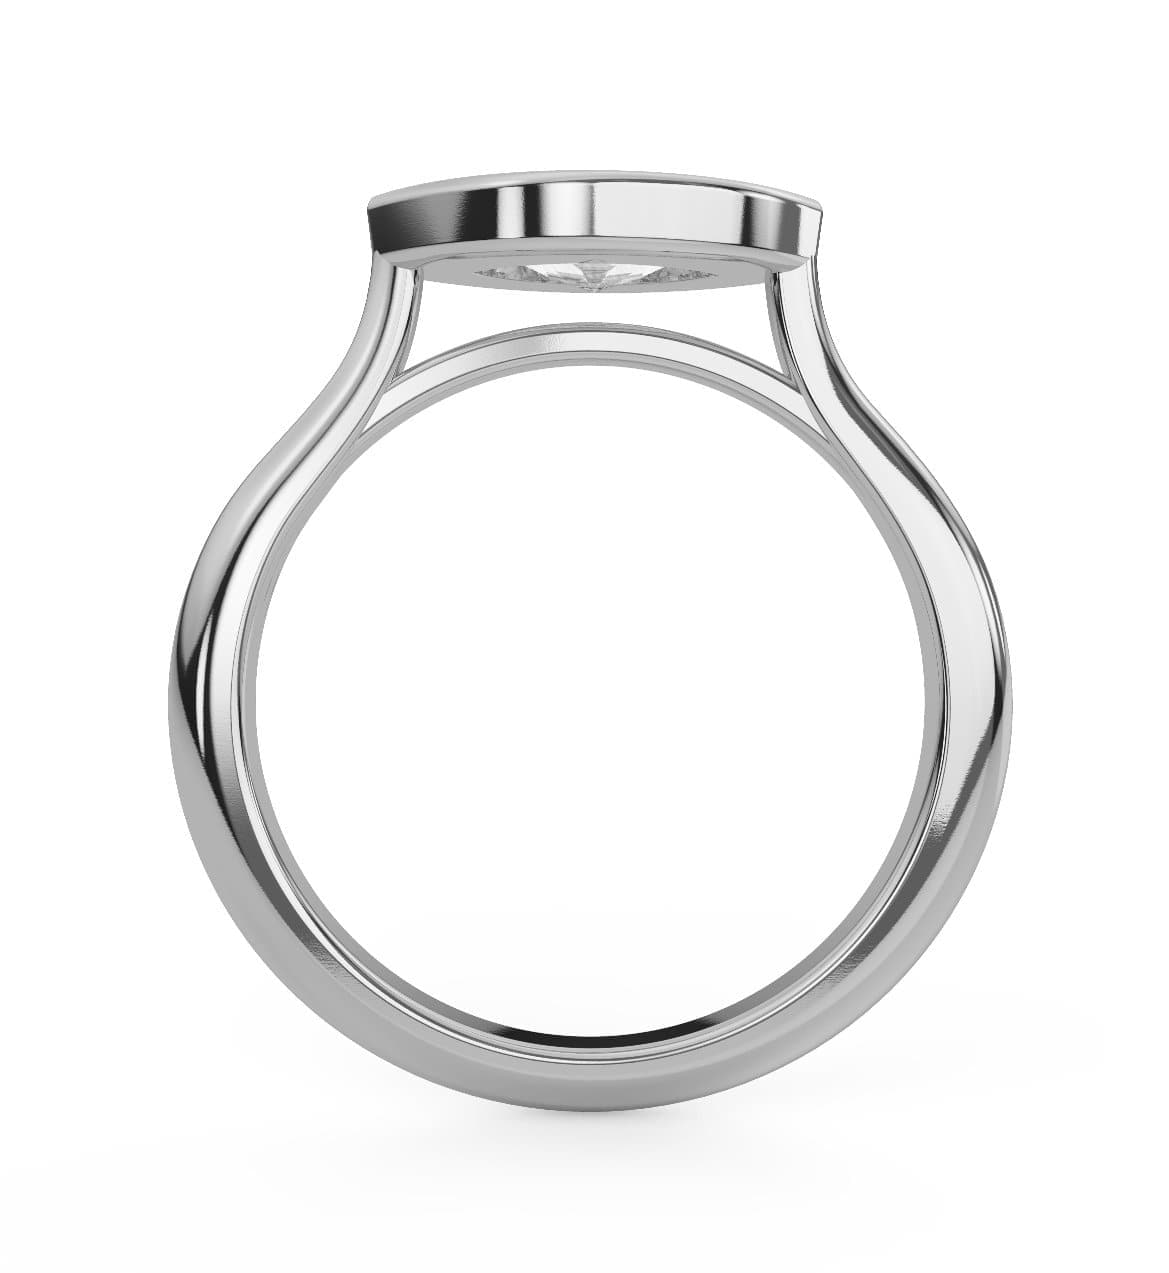 Oval Cut Moissanite Bezel Engagement Ring